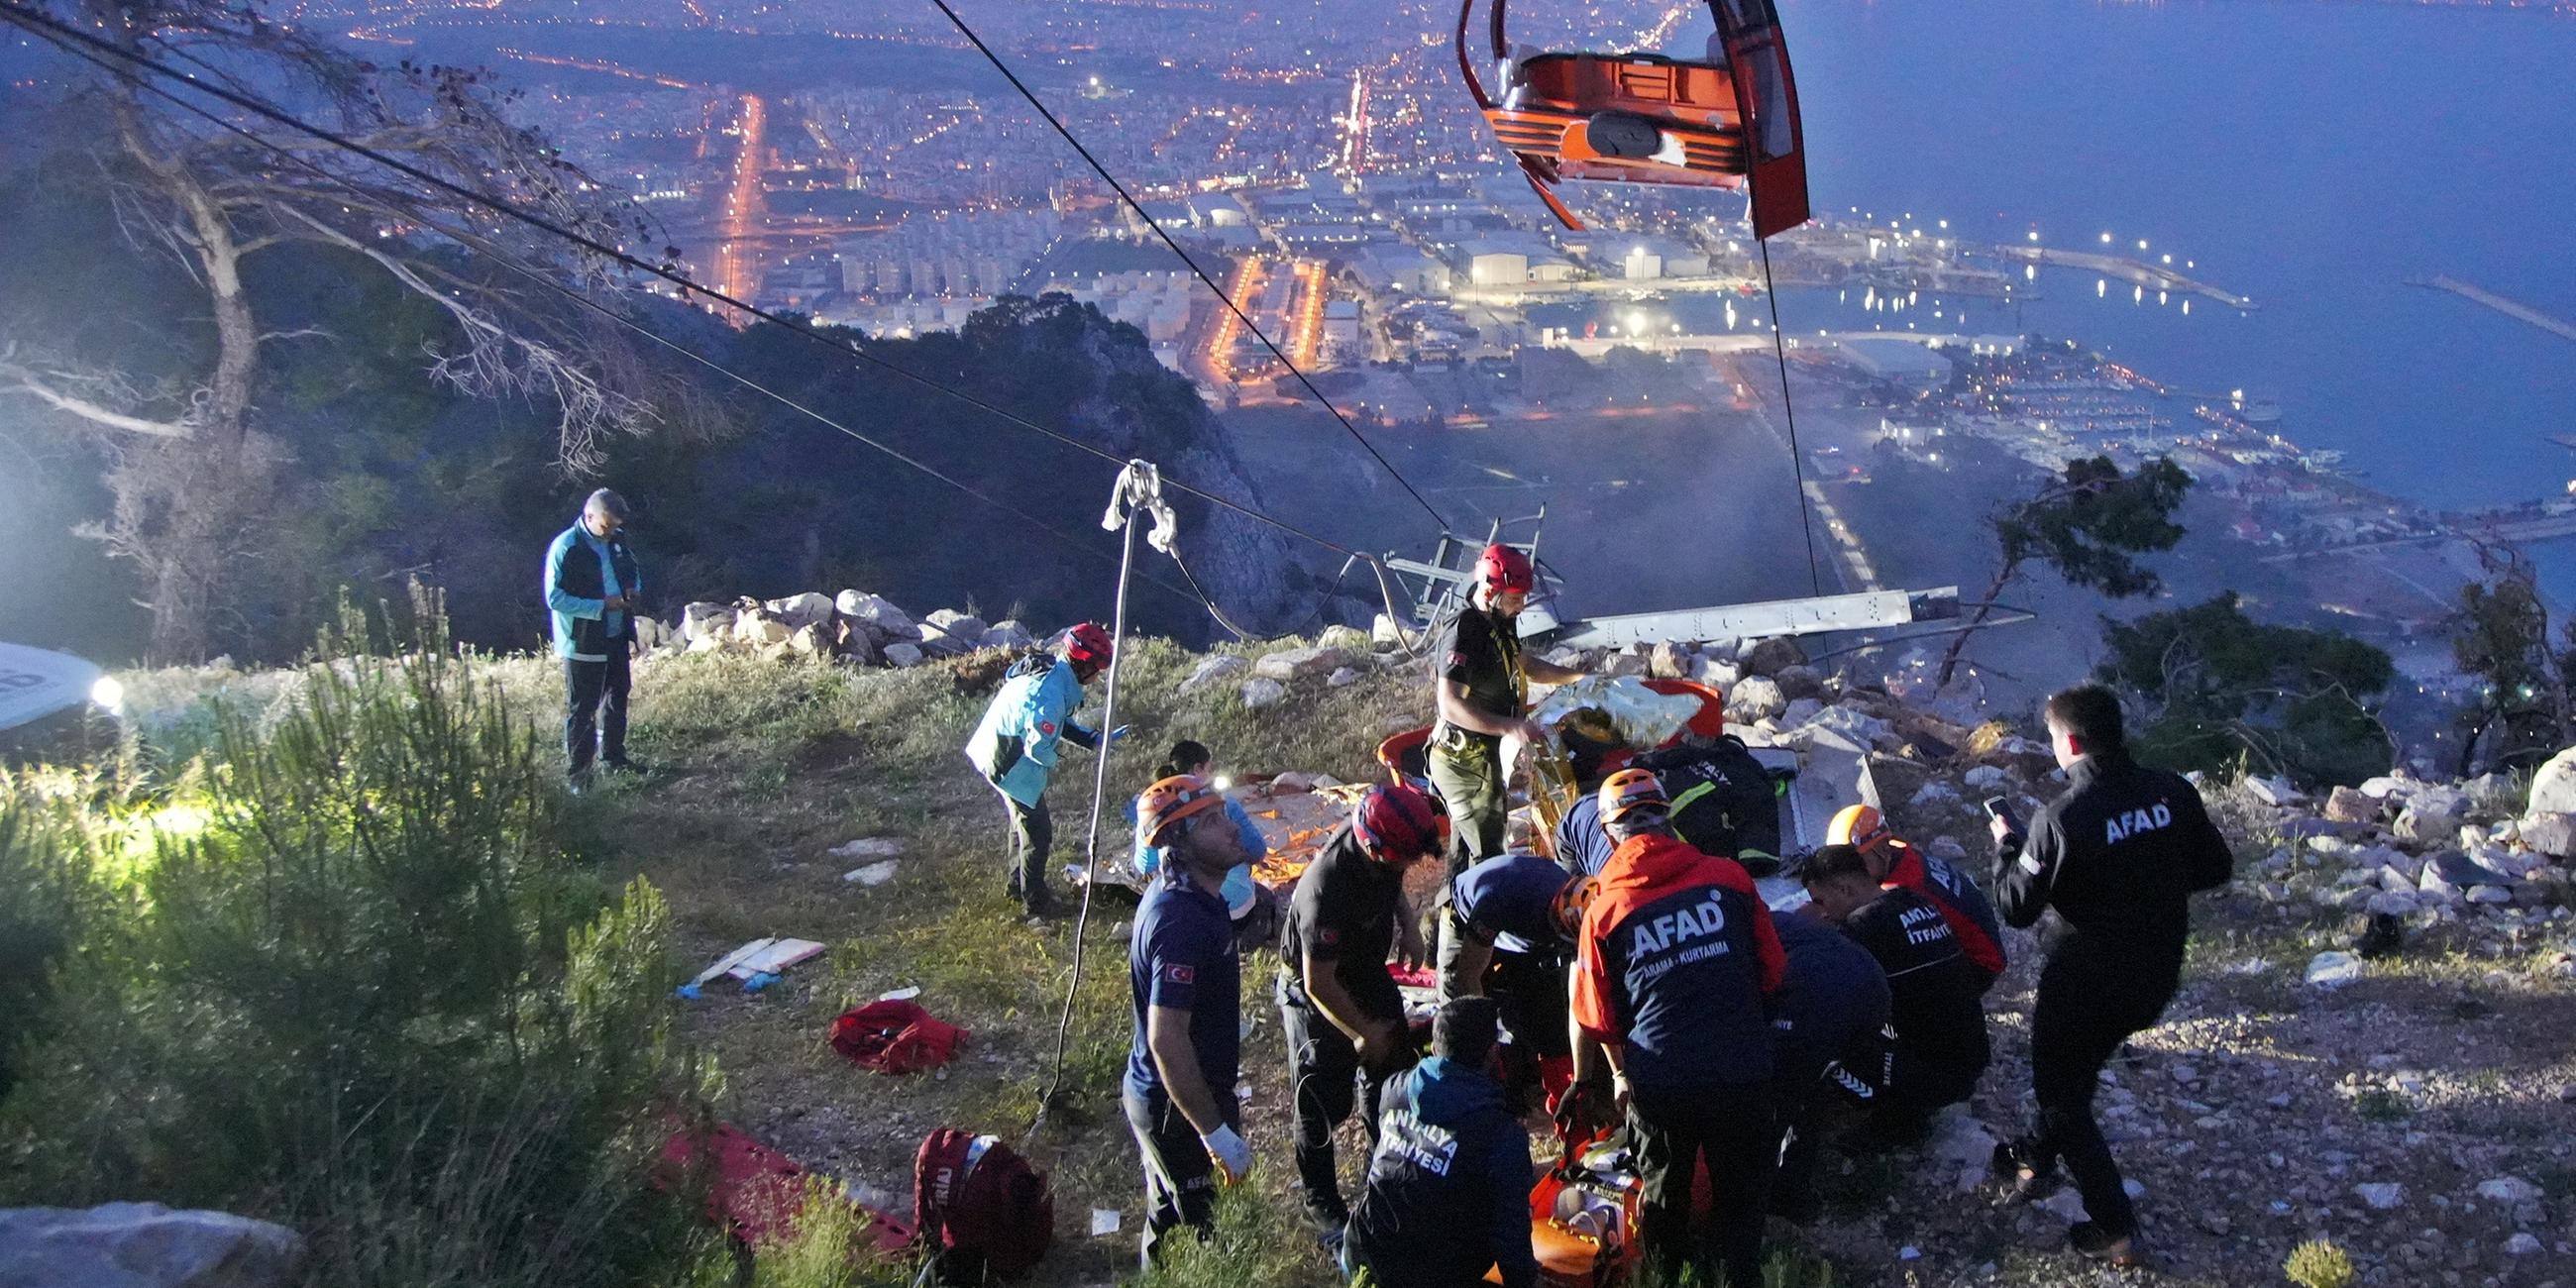 Rettungsteam arbeitet an der Unfallstelle einer verunglückten Seilbahn bei Antalya